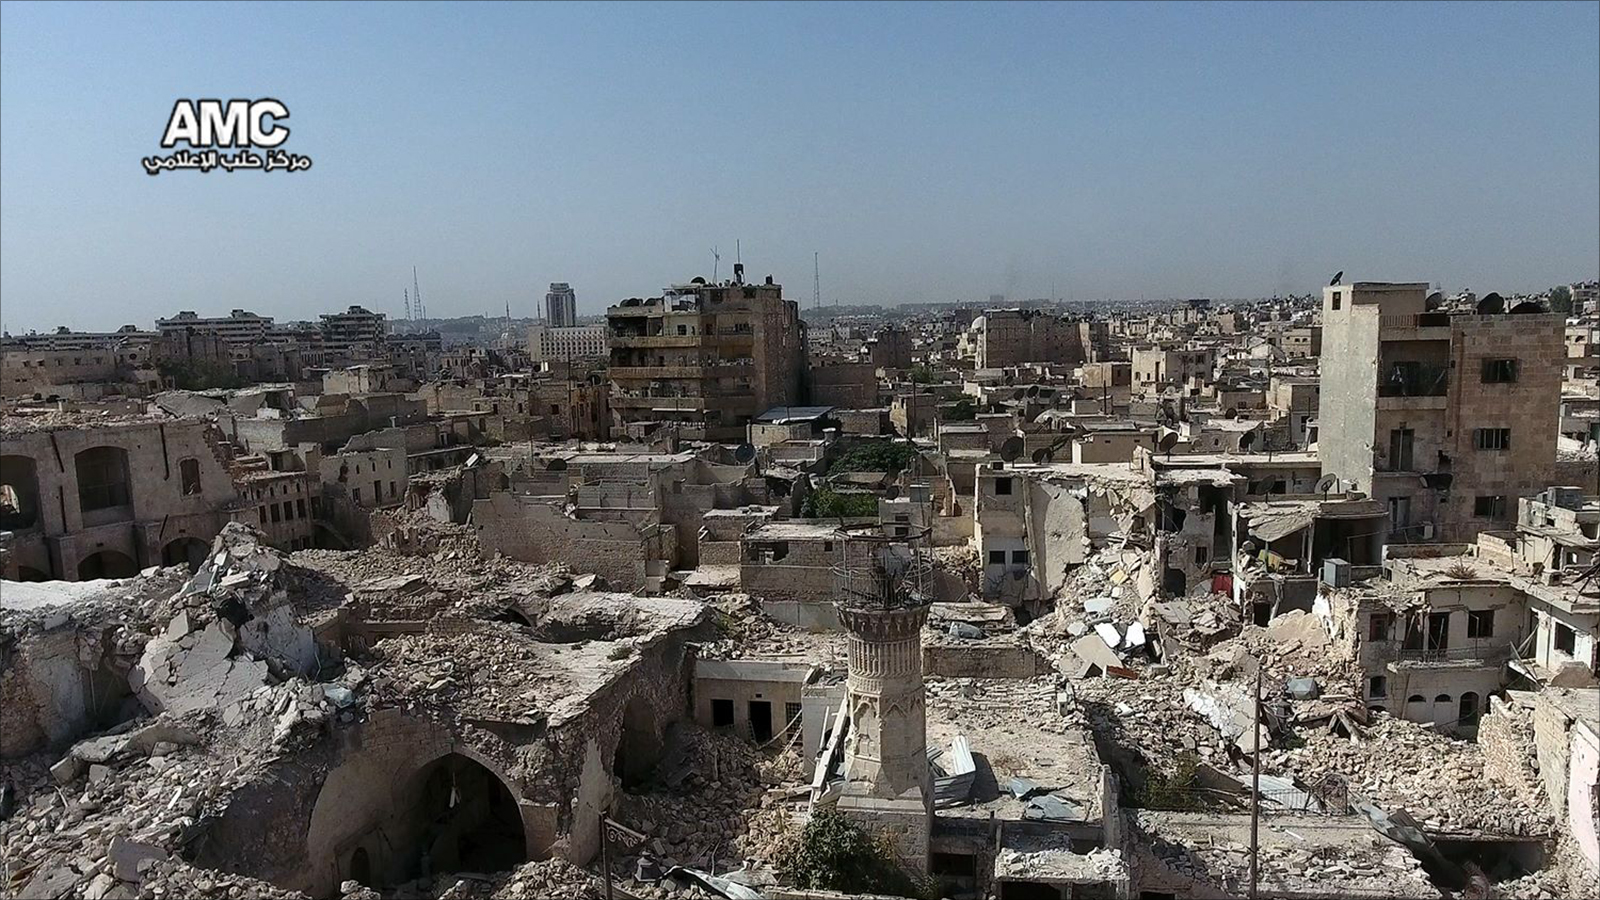 ‪صور جوية تظهر الدمار الهائل الذي خلفه القصف الجوي الروسي على أحياء حلب القديمة‬ صور جوية تظهر الدمار الهائل الذي خلفه القصف الجوي الروسي على أحياء حلب القديمة (ناشطون)